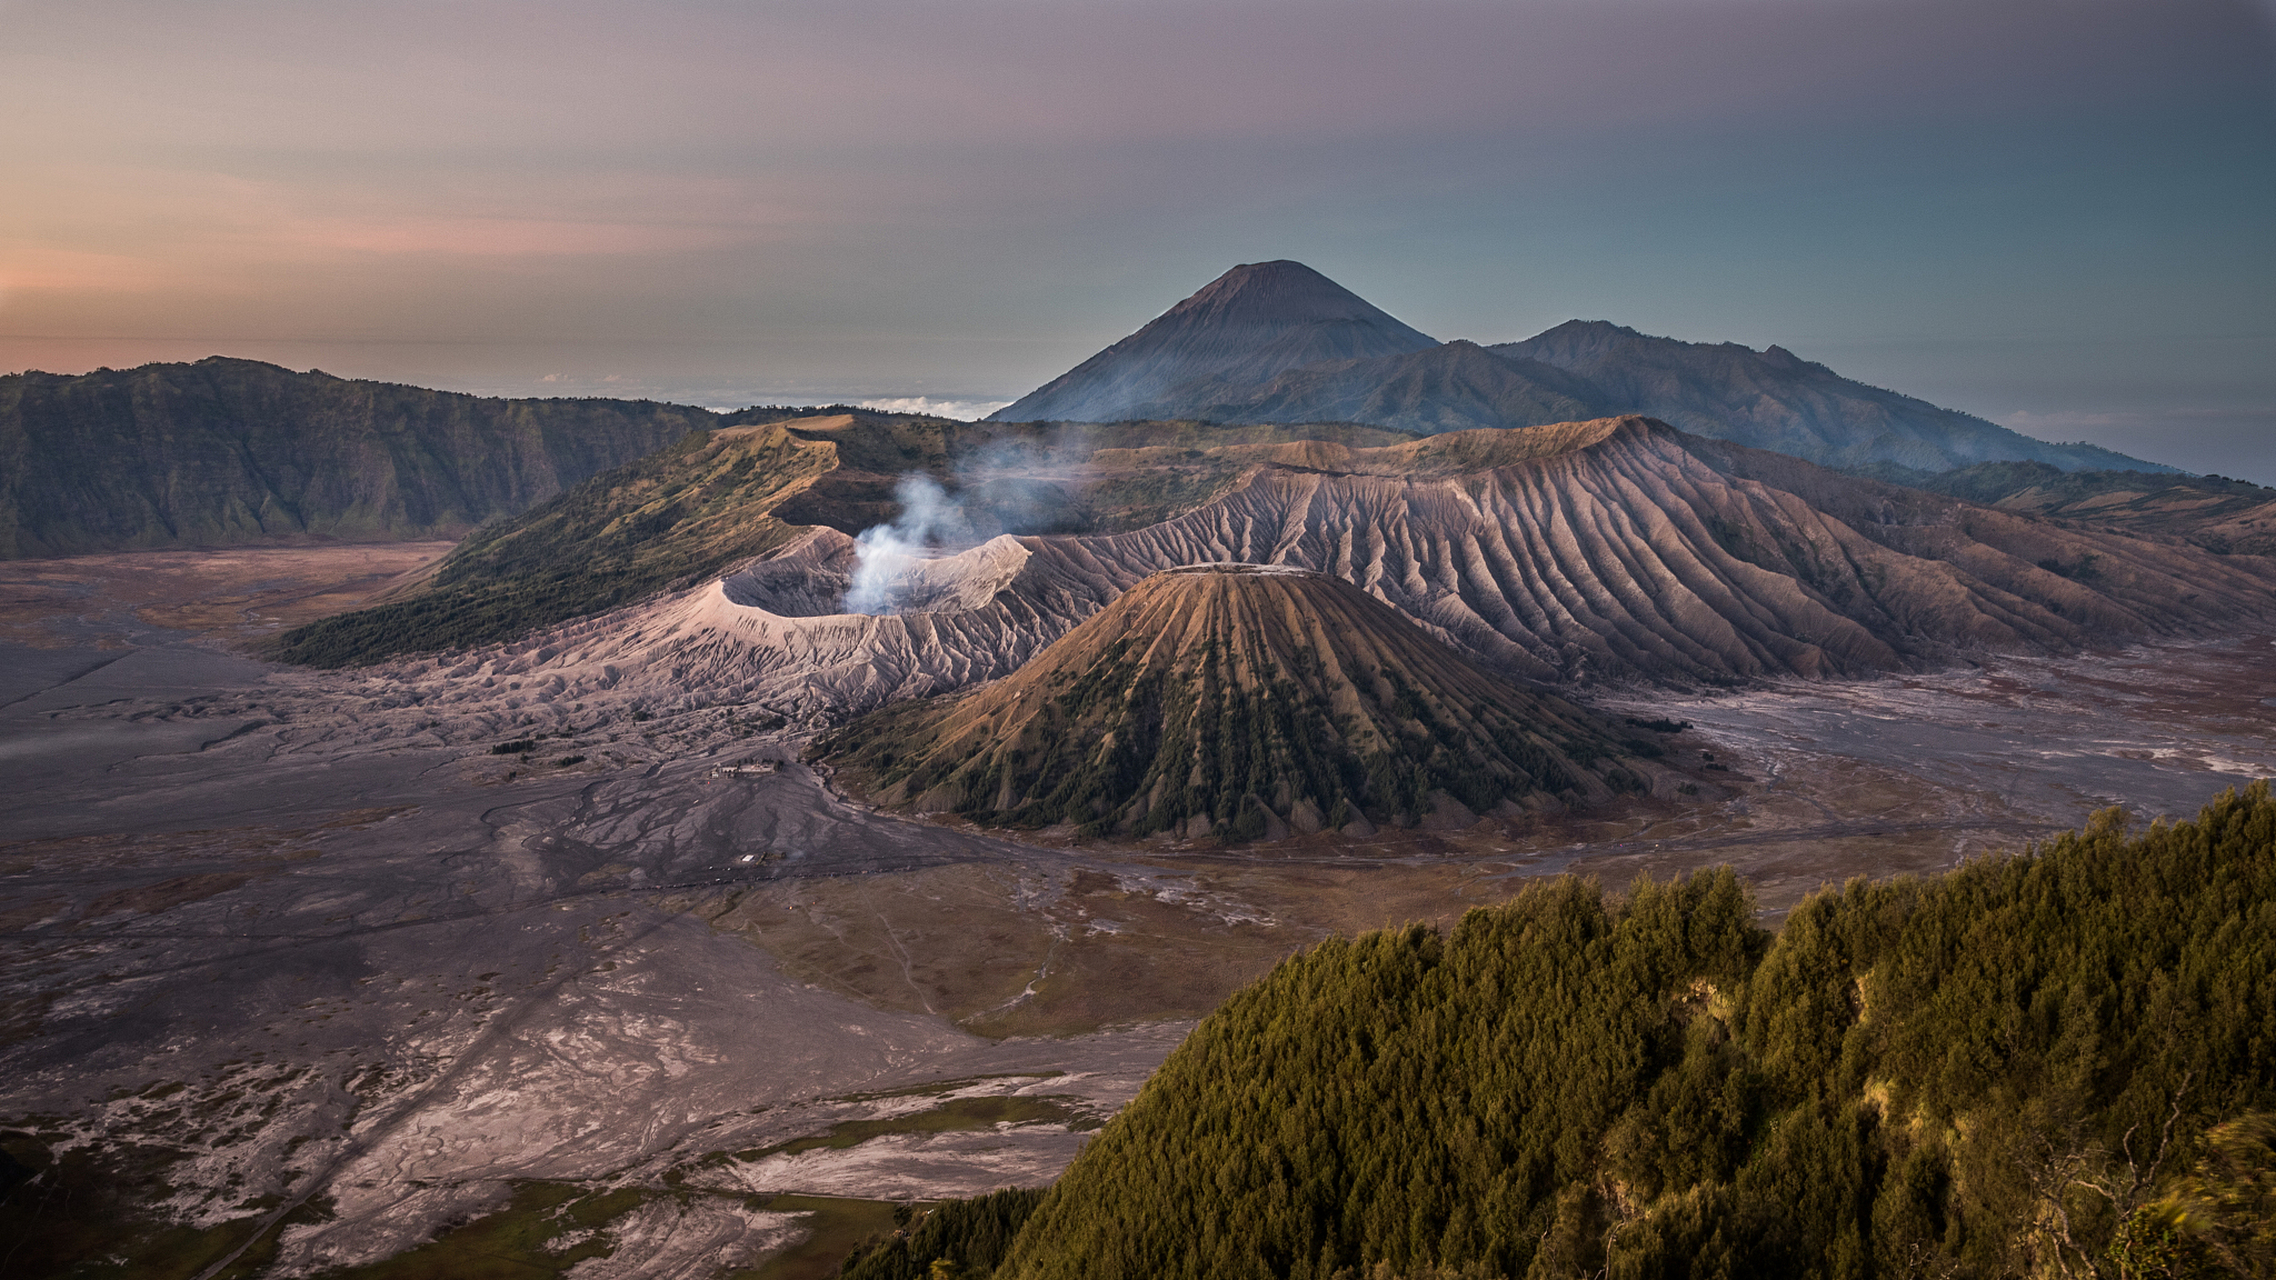 埃塞尔比尼火山(erta ale)被称为地狱之火的火山之一,它位于埃塞尔